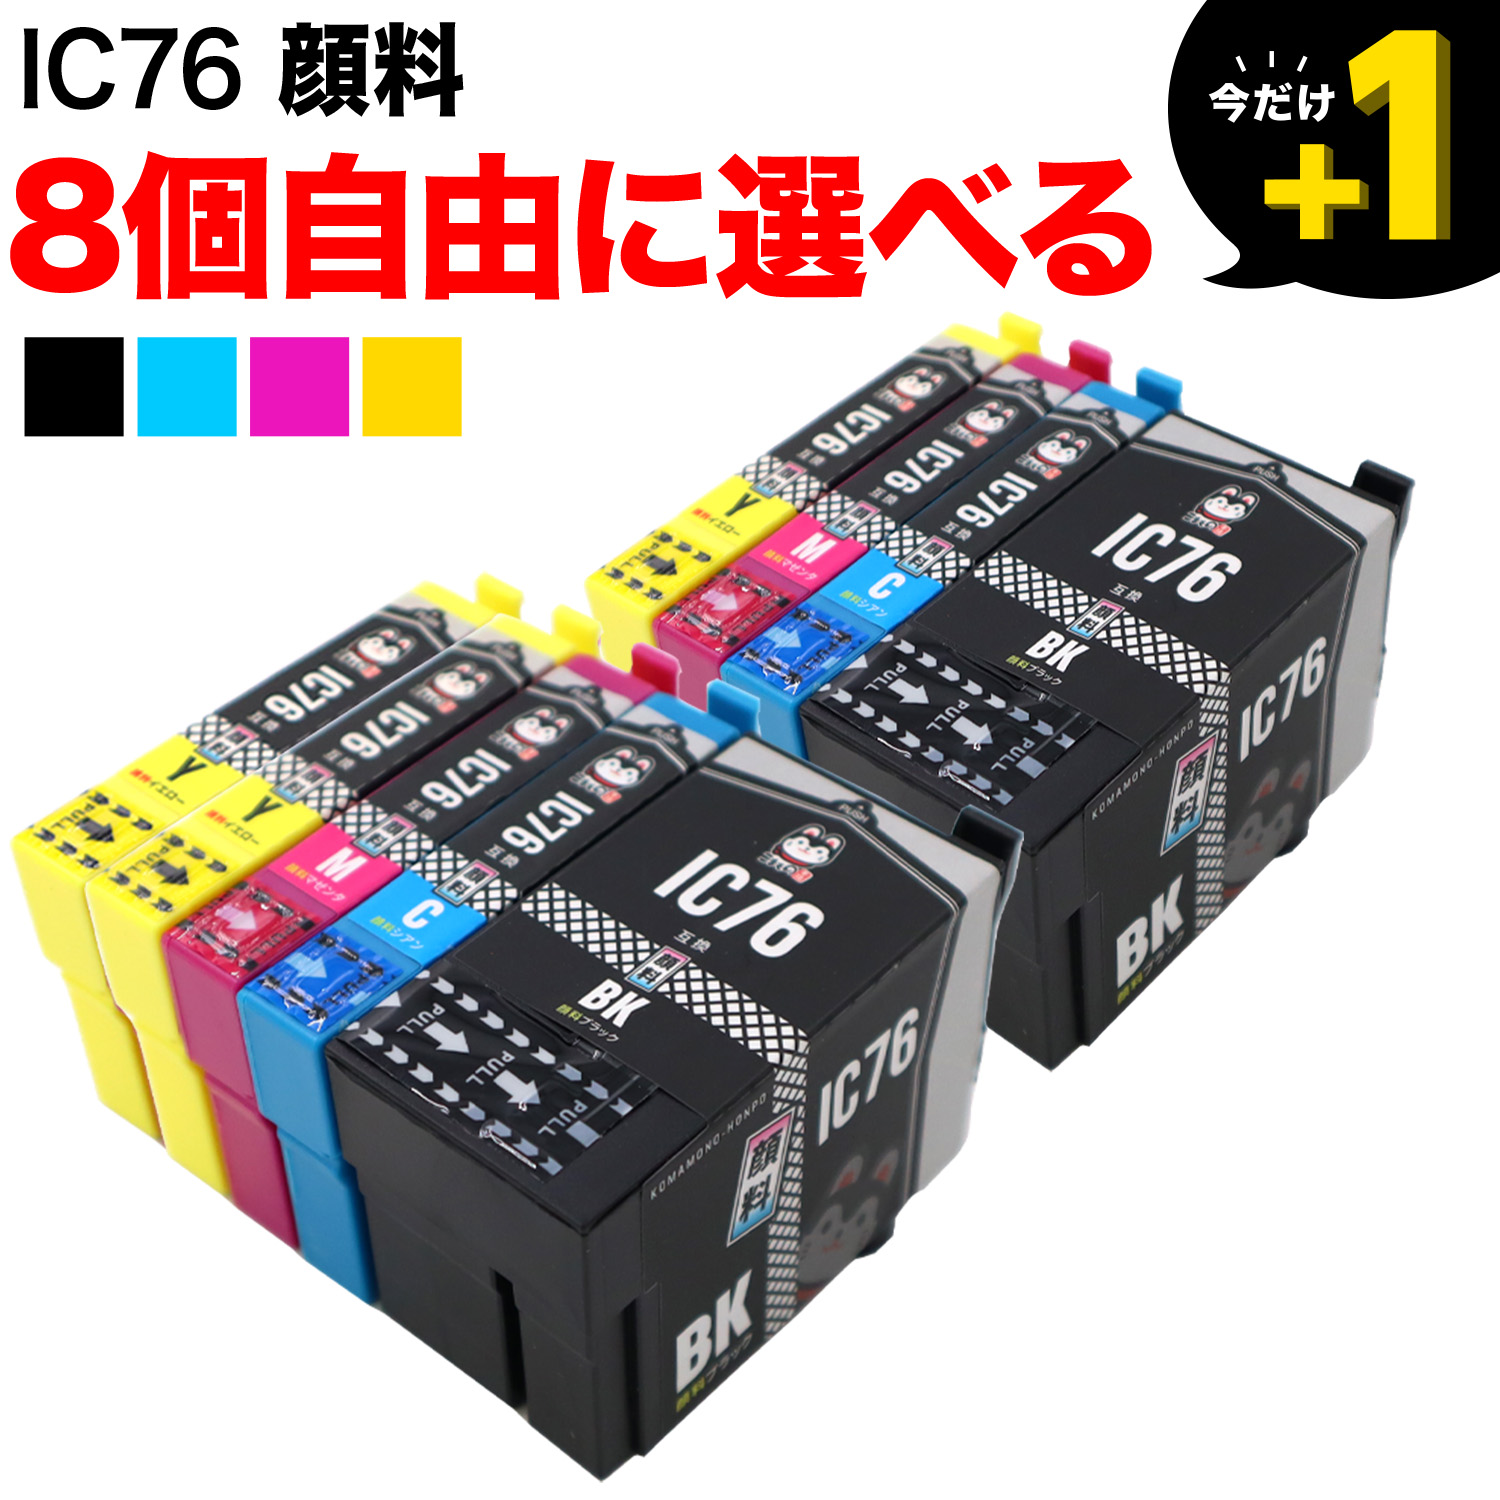 エプソン用 IC76互換インクカートリッジ 大容量 顔料 自由選択8個